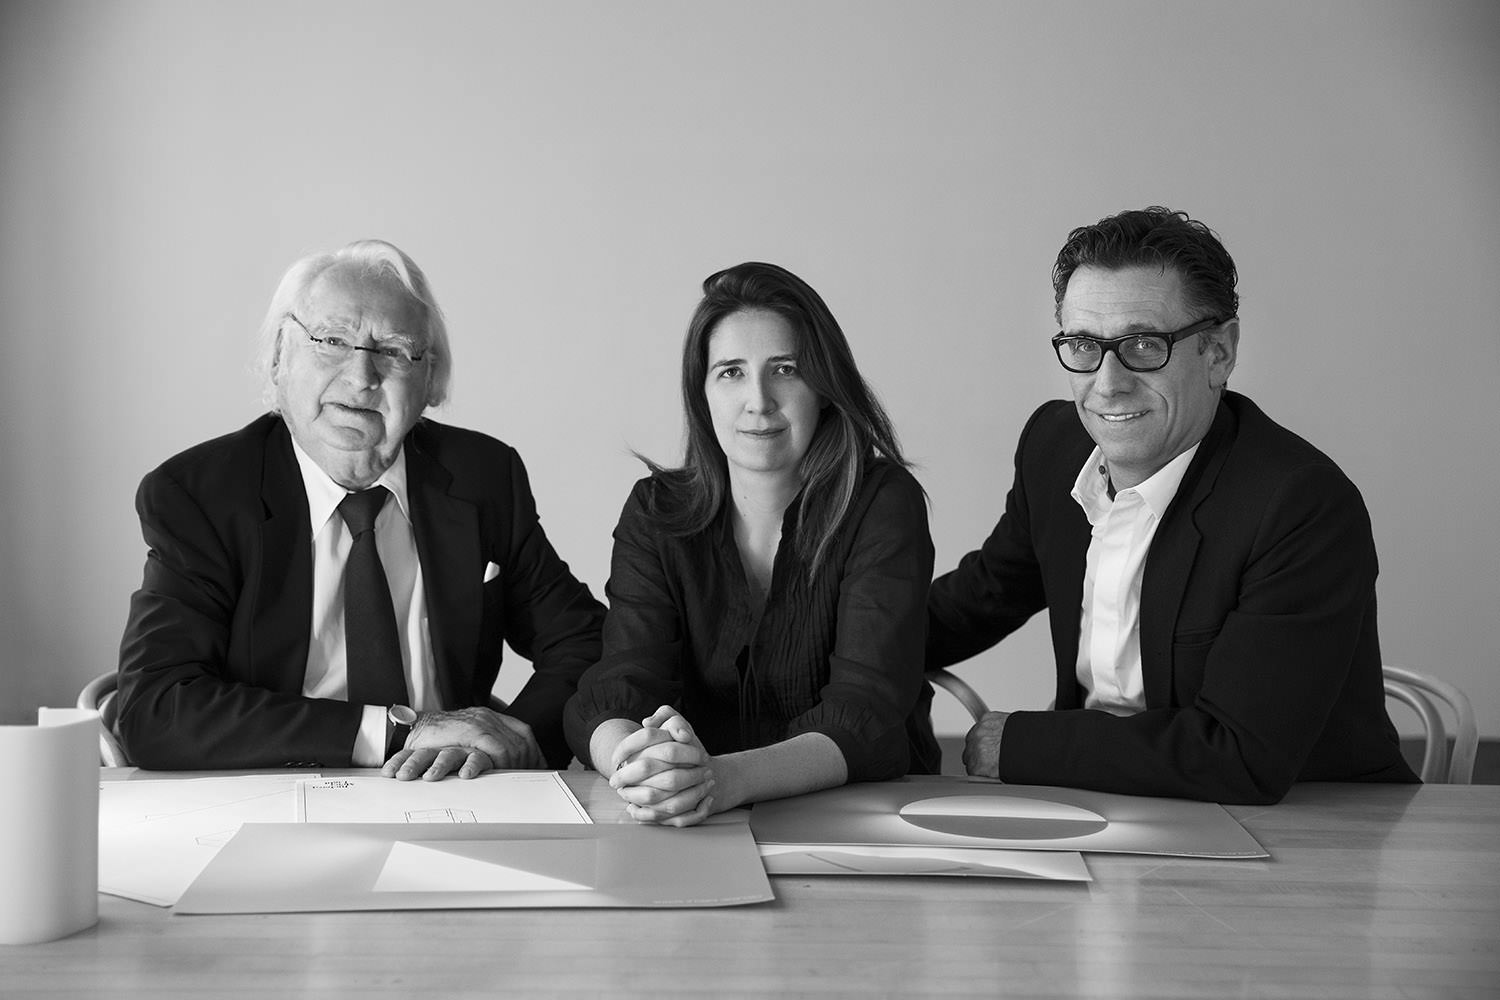 Richard Meier Light Partner Portrait